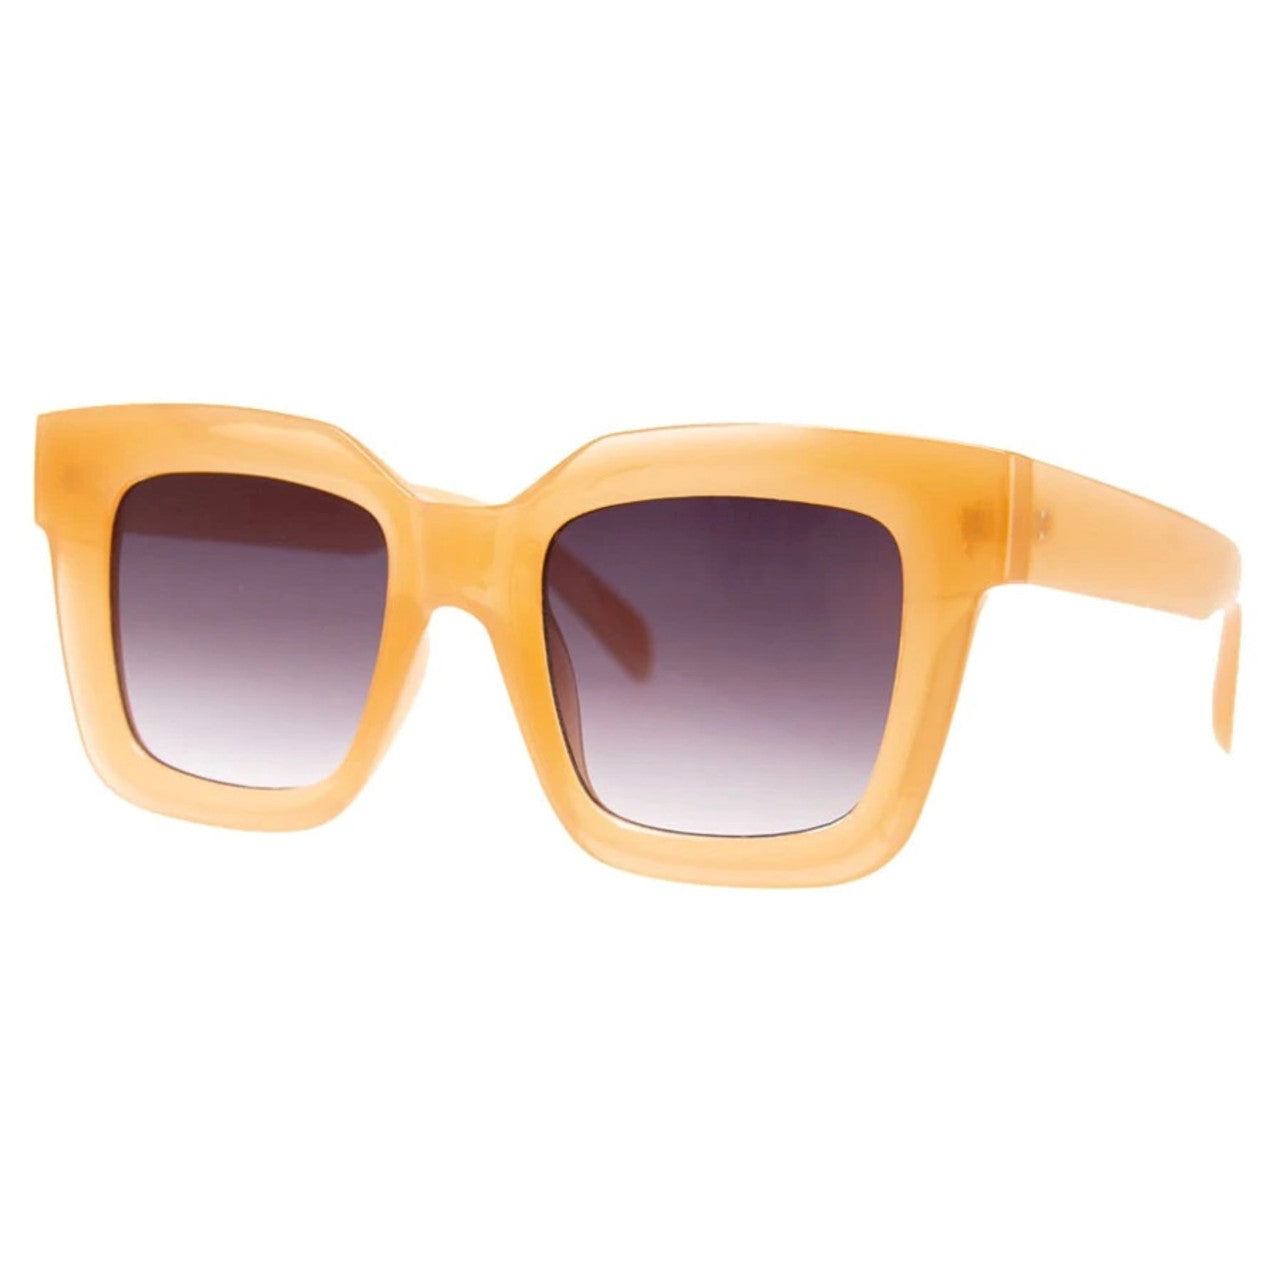 Peach Che Che Sunglasses